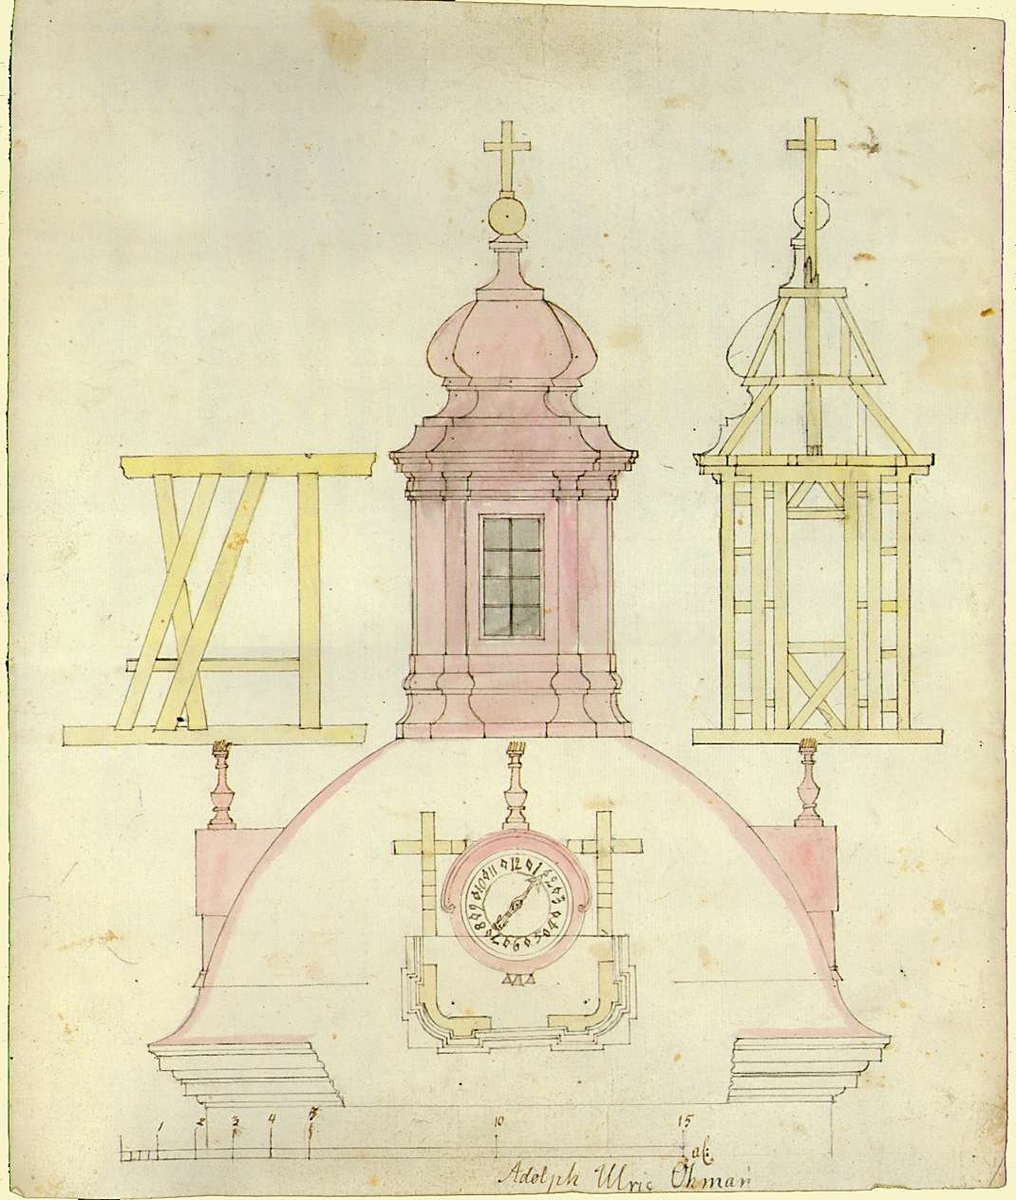 Ritning av kyrktorn med klocka och kors. Signerad Adolph Ulric Öhman.